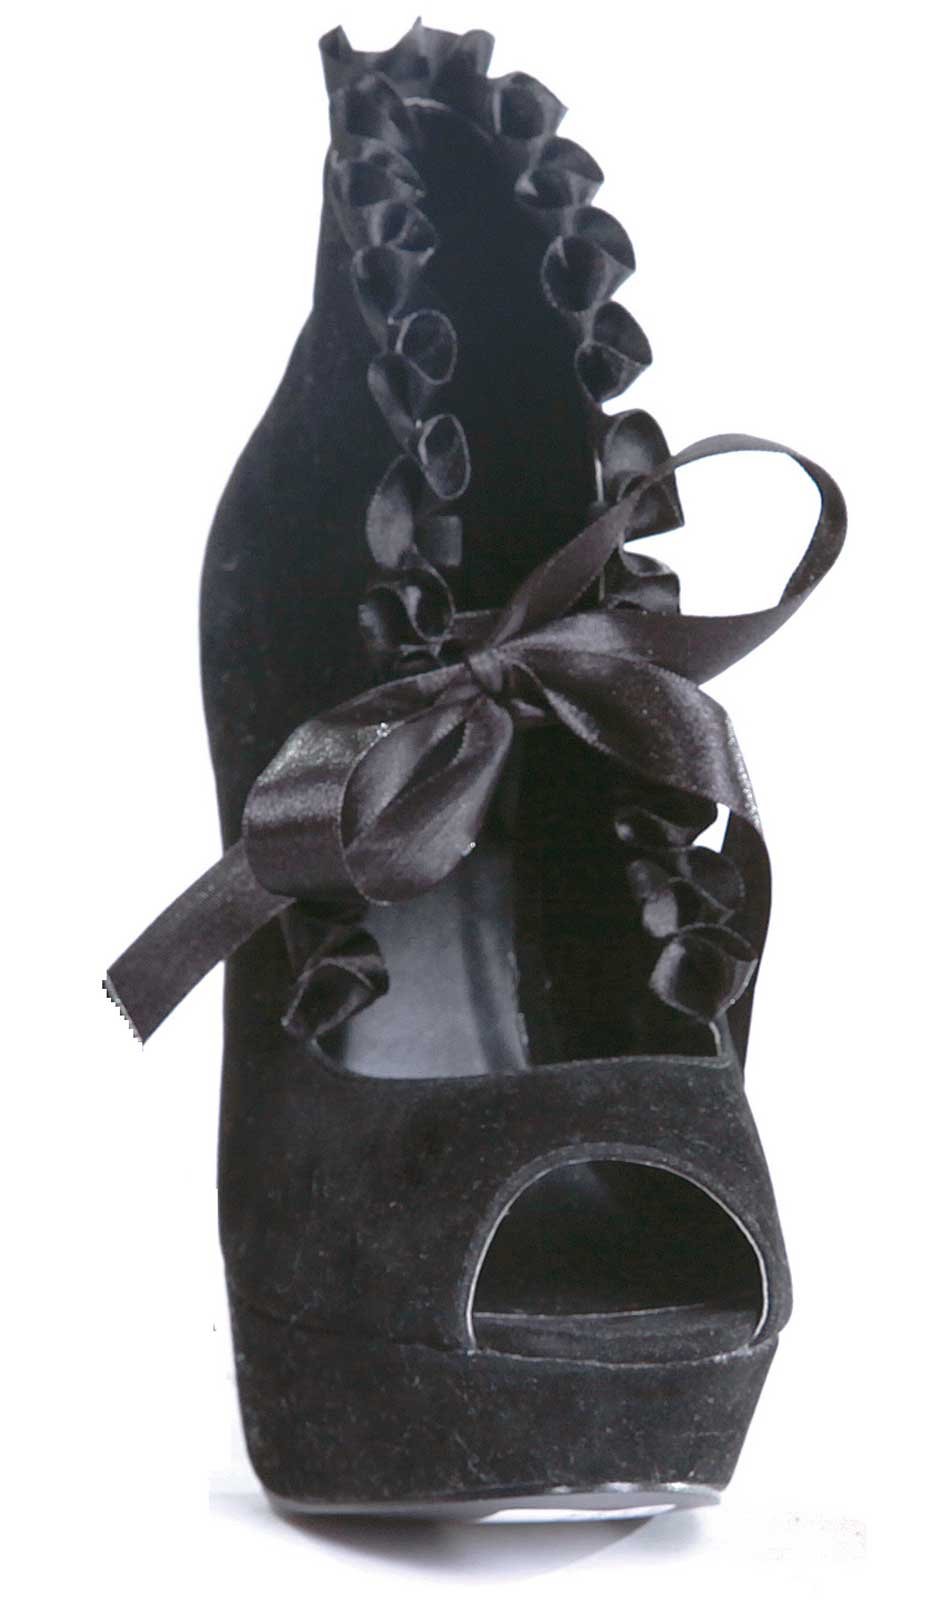 Black Velvet Peep Toe Adult Boots